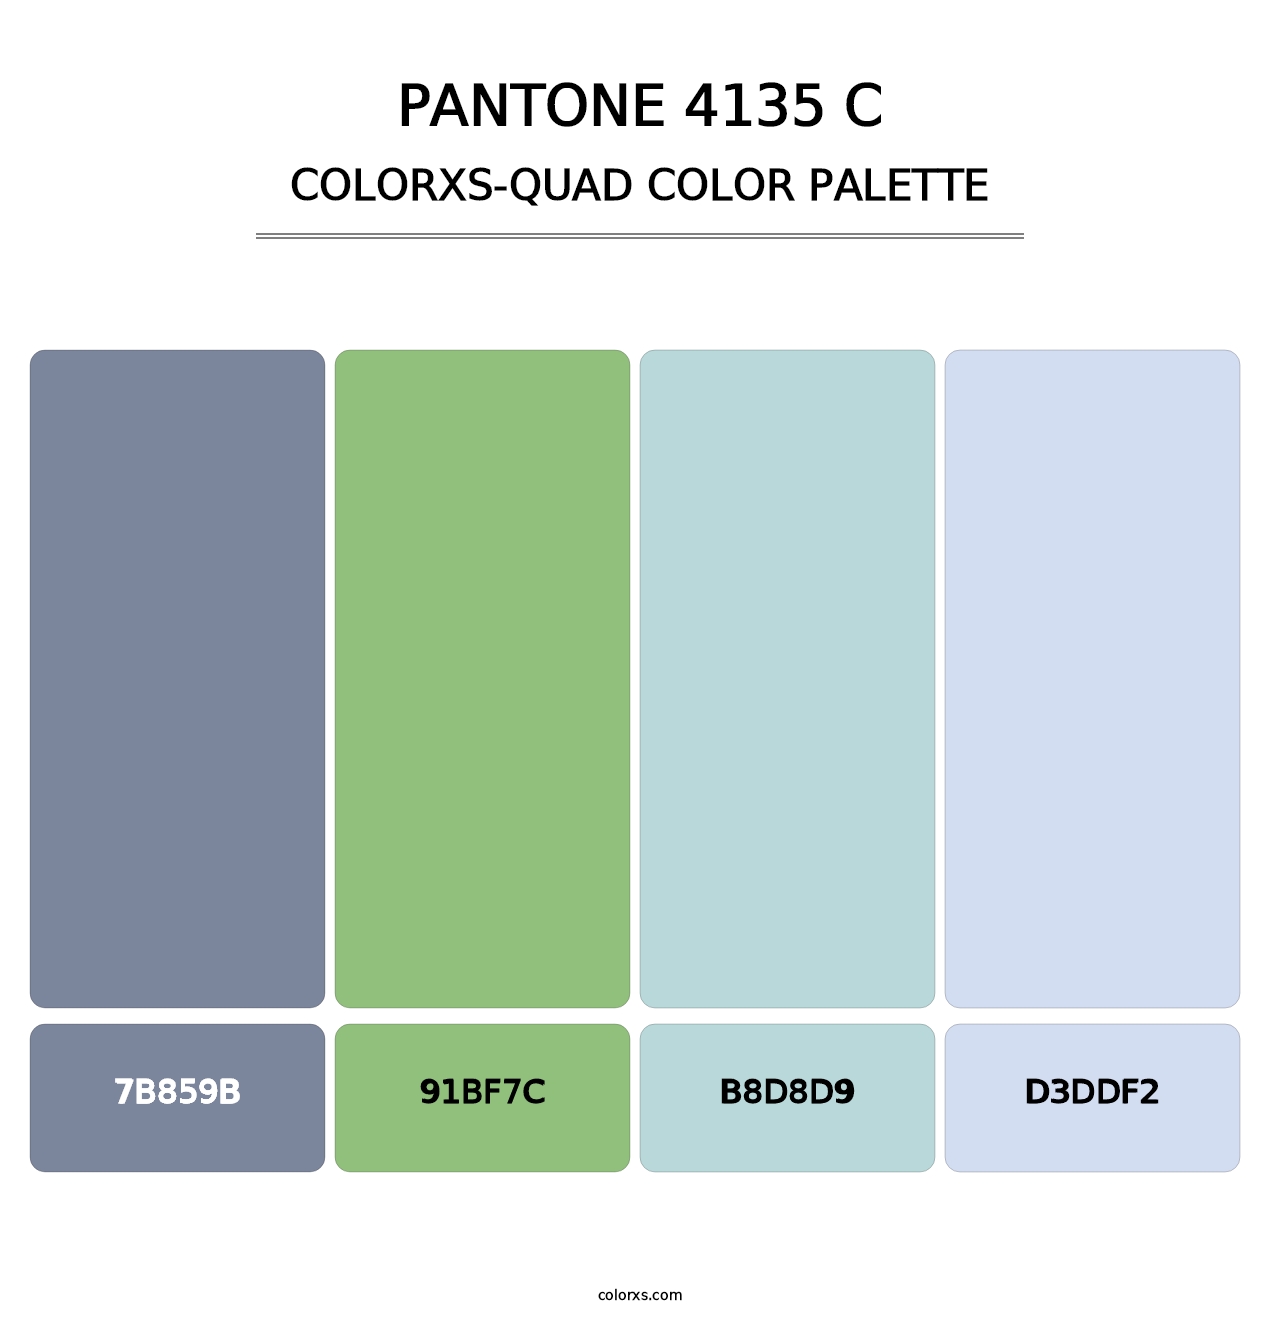 PANTONE 4135 C - Colorxs Quad Palette